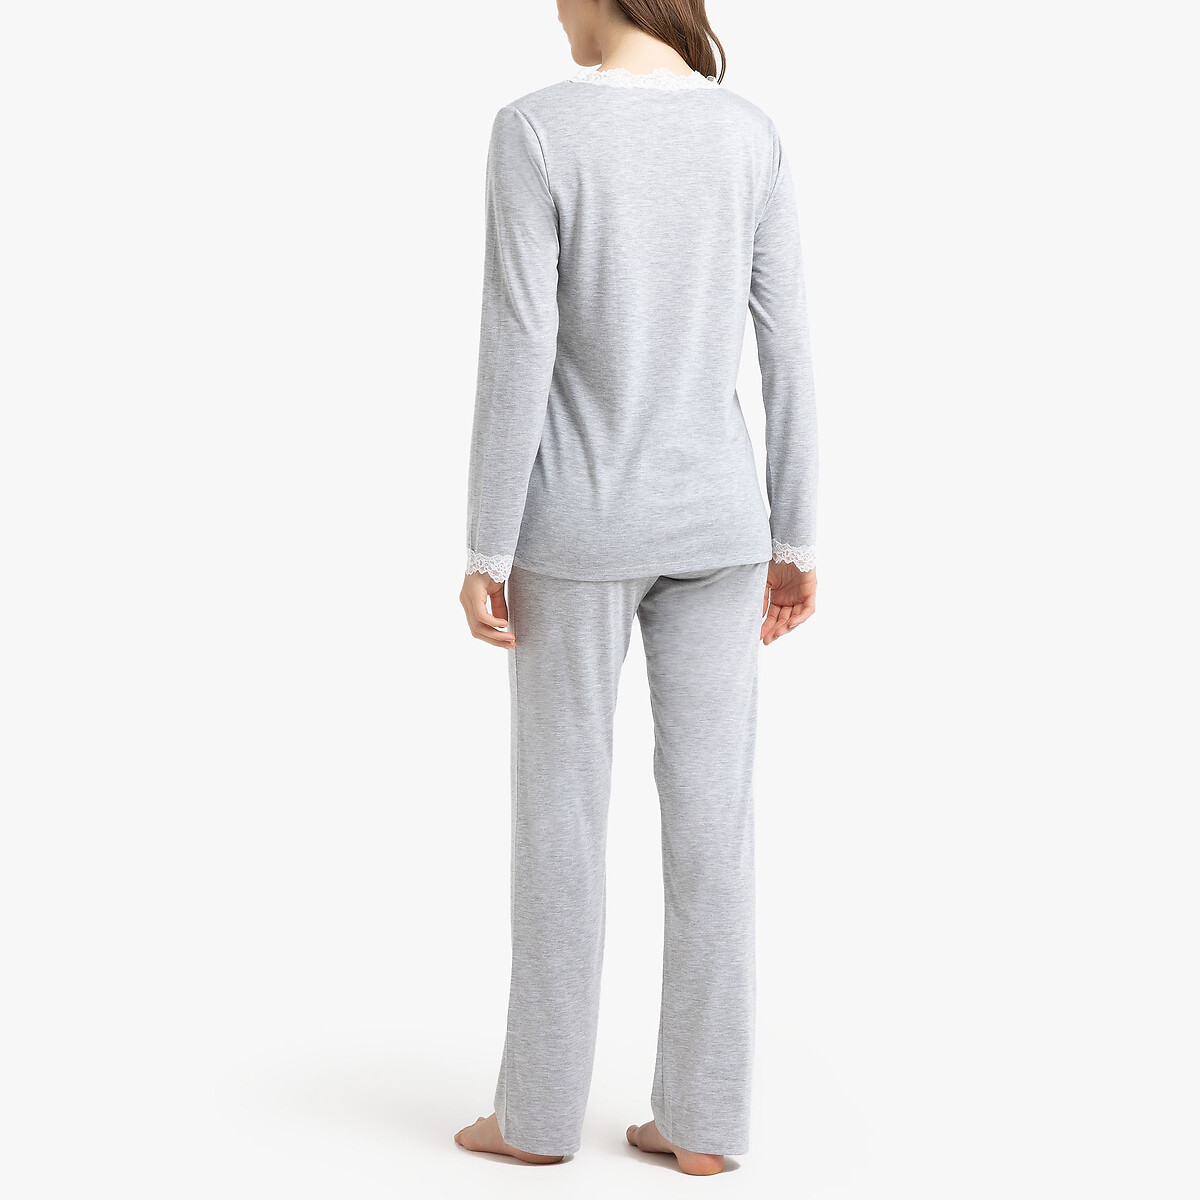 Пижама La Redoute С длинными рукавами 42/44 (FR) - 48/50 (RUS) серый, размер 42/44 (FR) - 48/50 (RUS) С длинными рукавами 42/44 (FR) - 48/50 (RUS) серый - фото 4